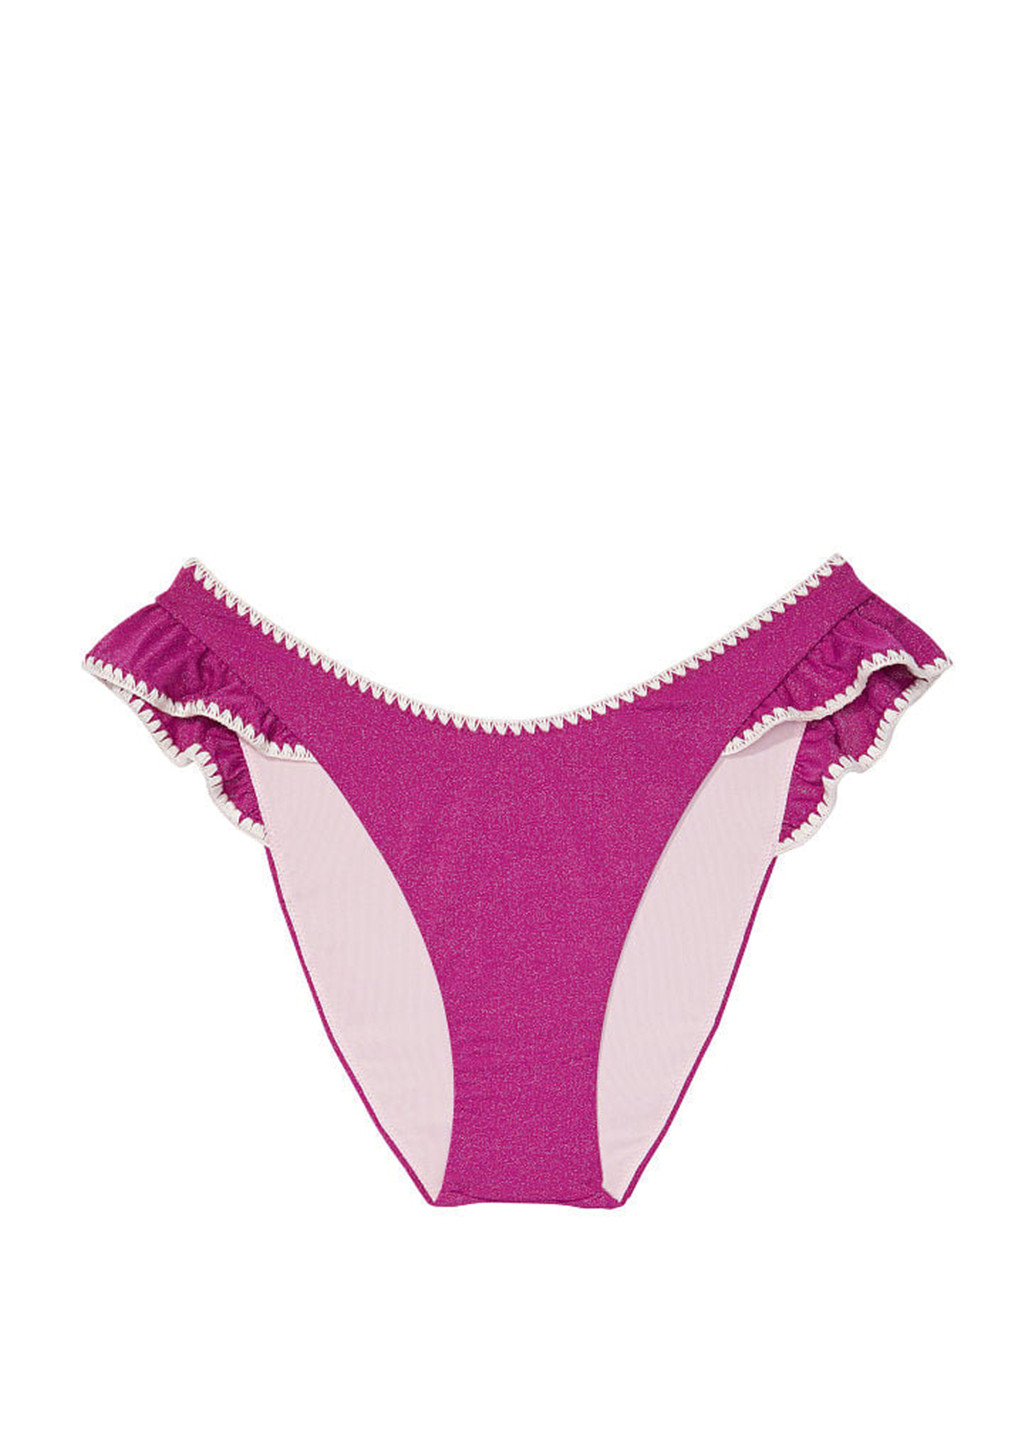 Фиолетовый летний купальник (лиф, трусики) раздельный Victoria's Secret